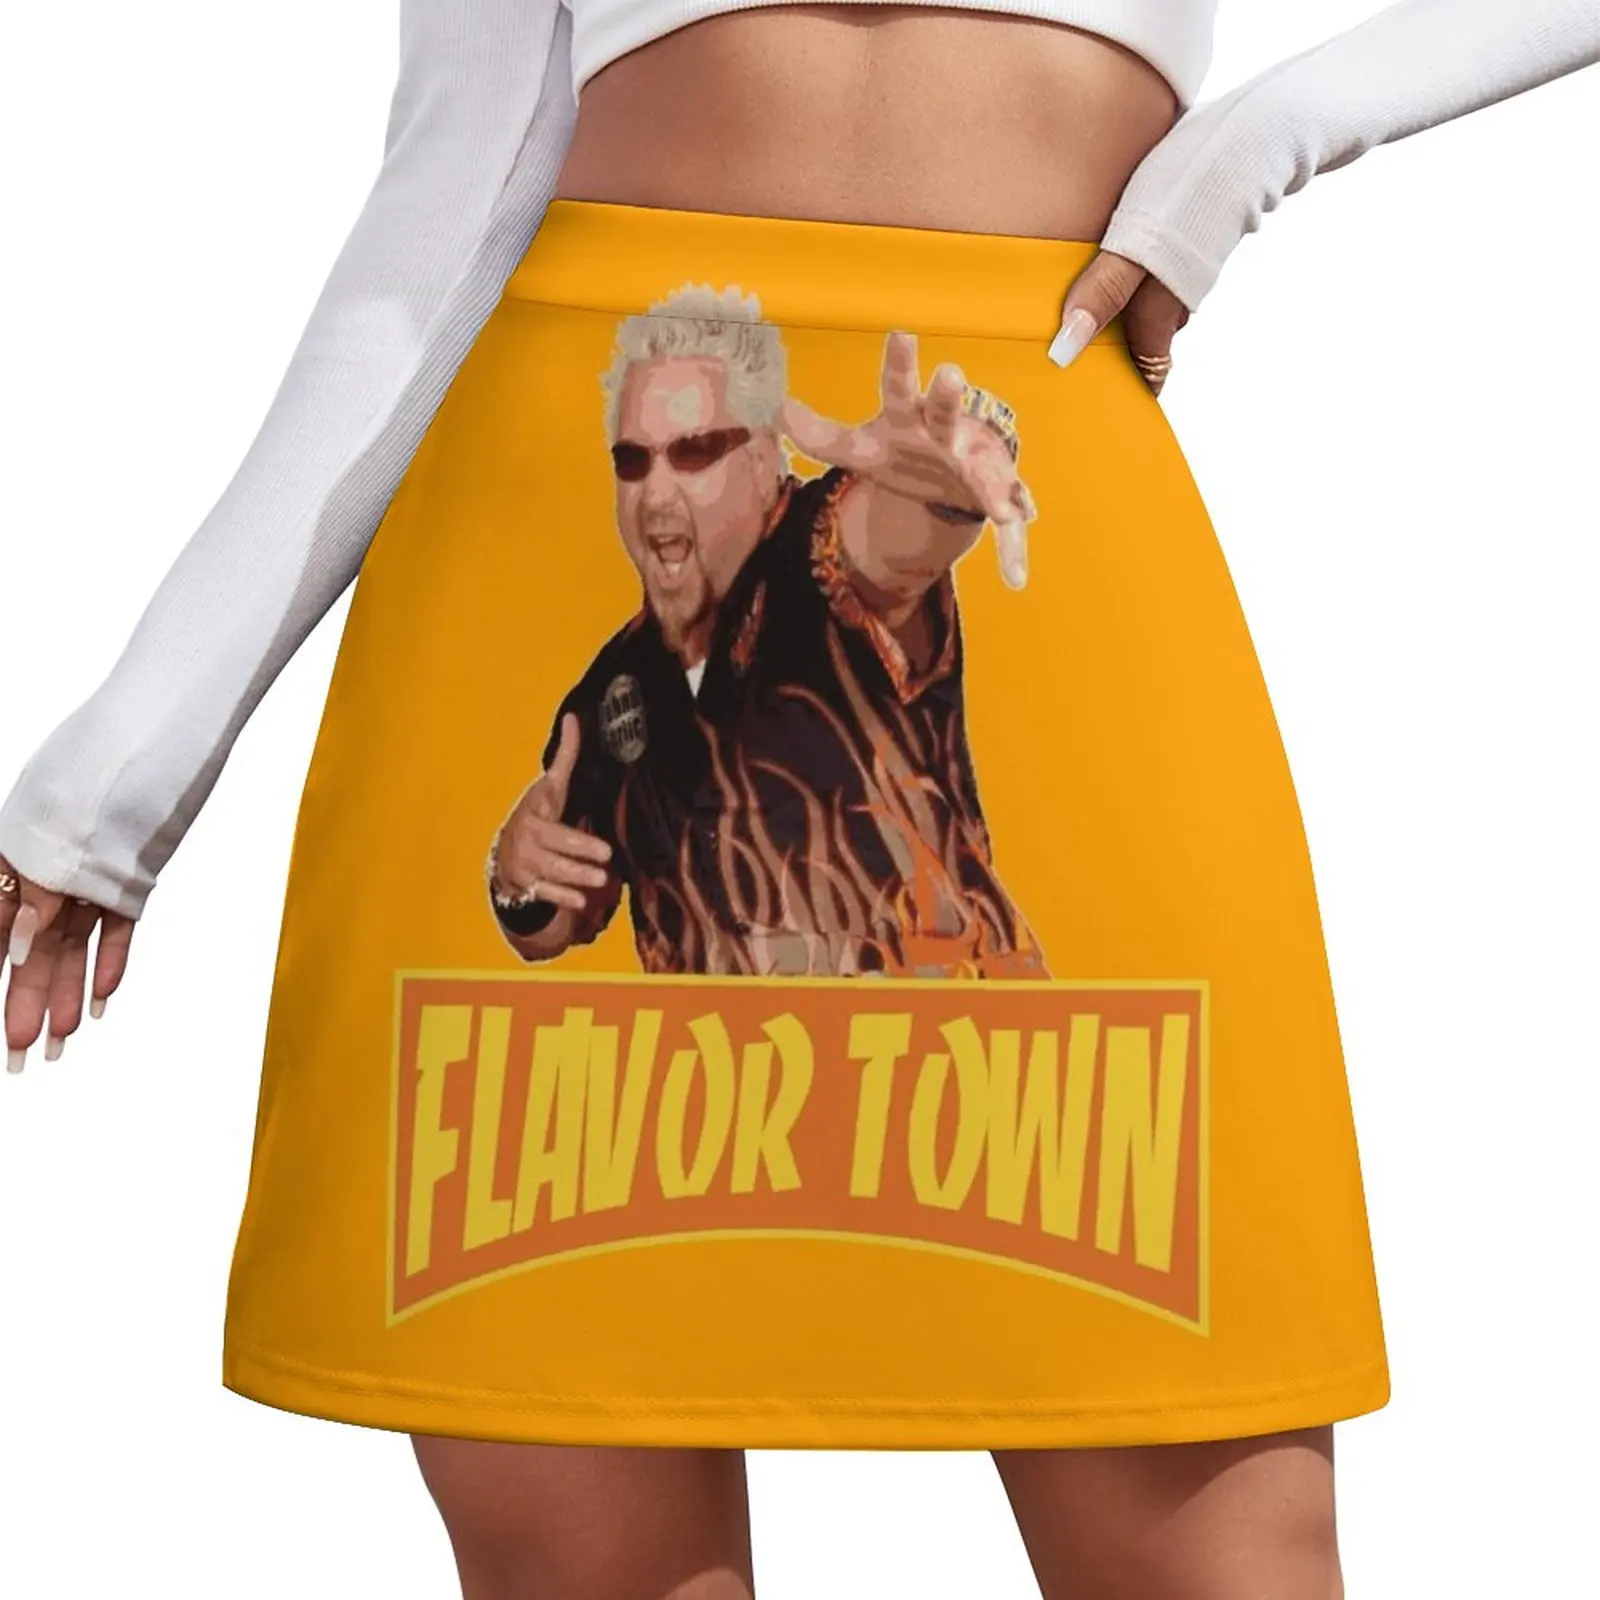 

Женская мини-юбка в американском стиле FLAVOR TOWN, мини-юбка-микро, экстремальные платья для выпускного вечера